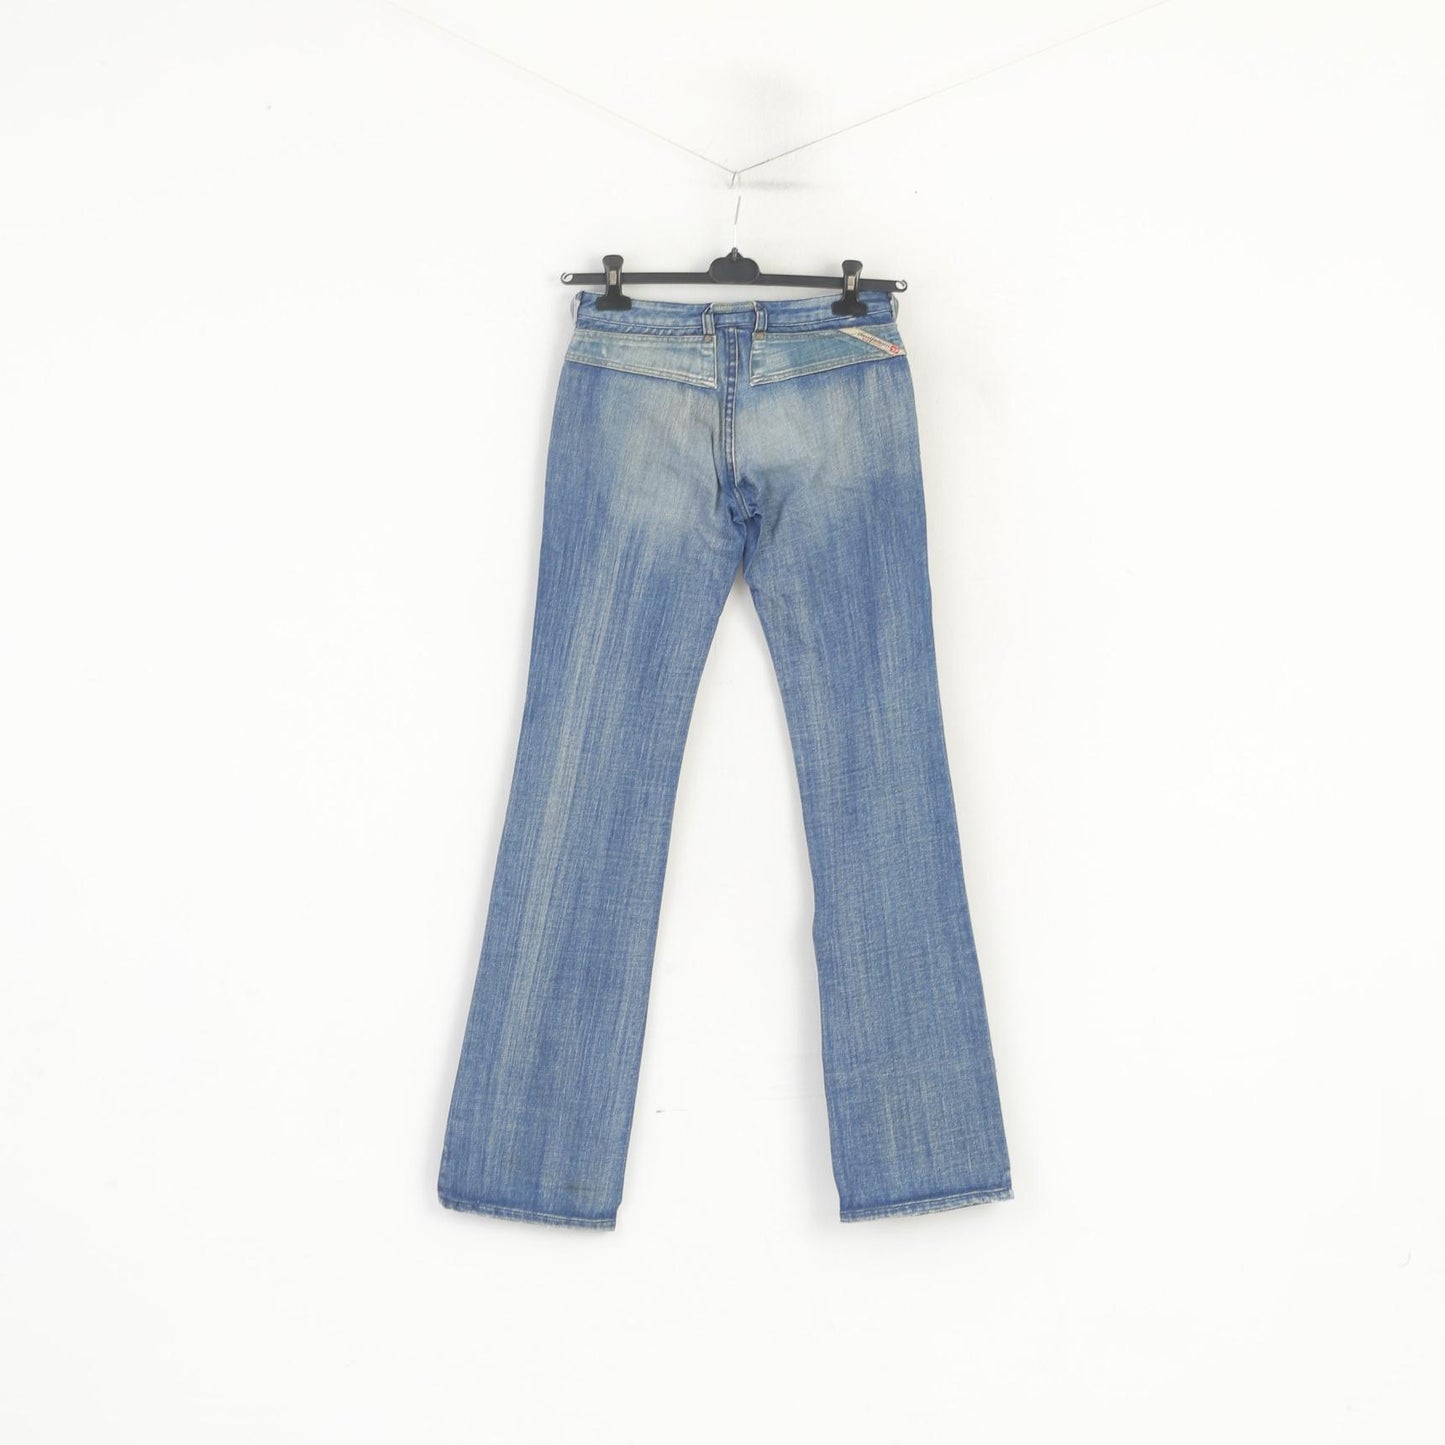 Diesel Women 26 Jeans Trousers Blue Denim Cotton Bootcut Vintage Long Pants